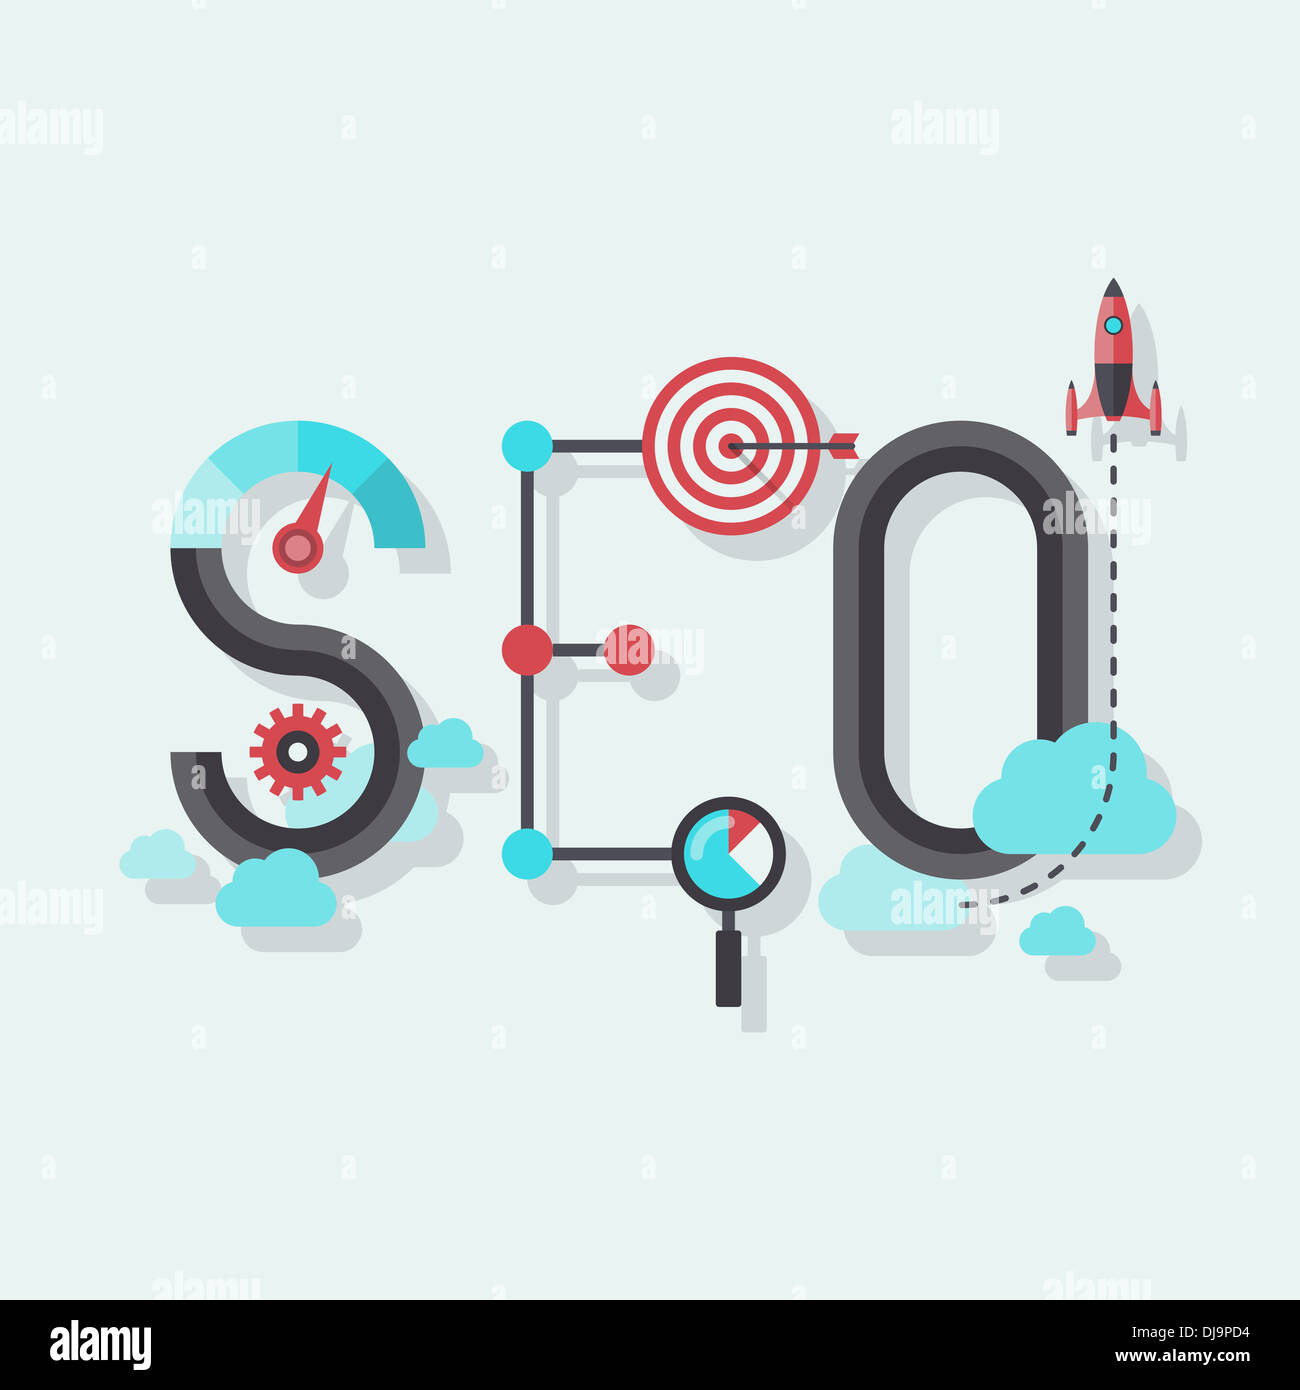 Illustrazione concetto di seo parola combinata da elementi e icone che simboleggiava il successo di ricerca internet Ottimizzazione di processo Foto Stock